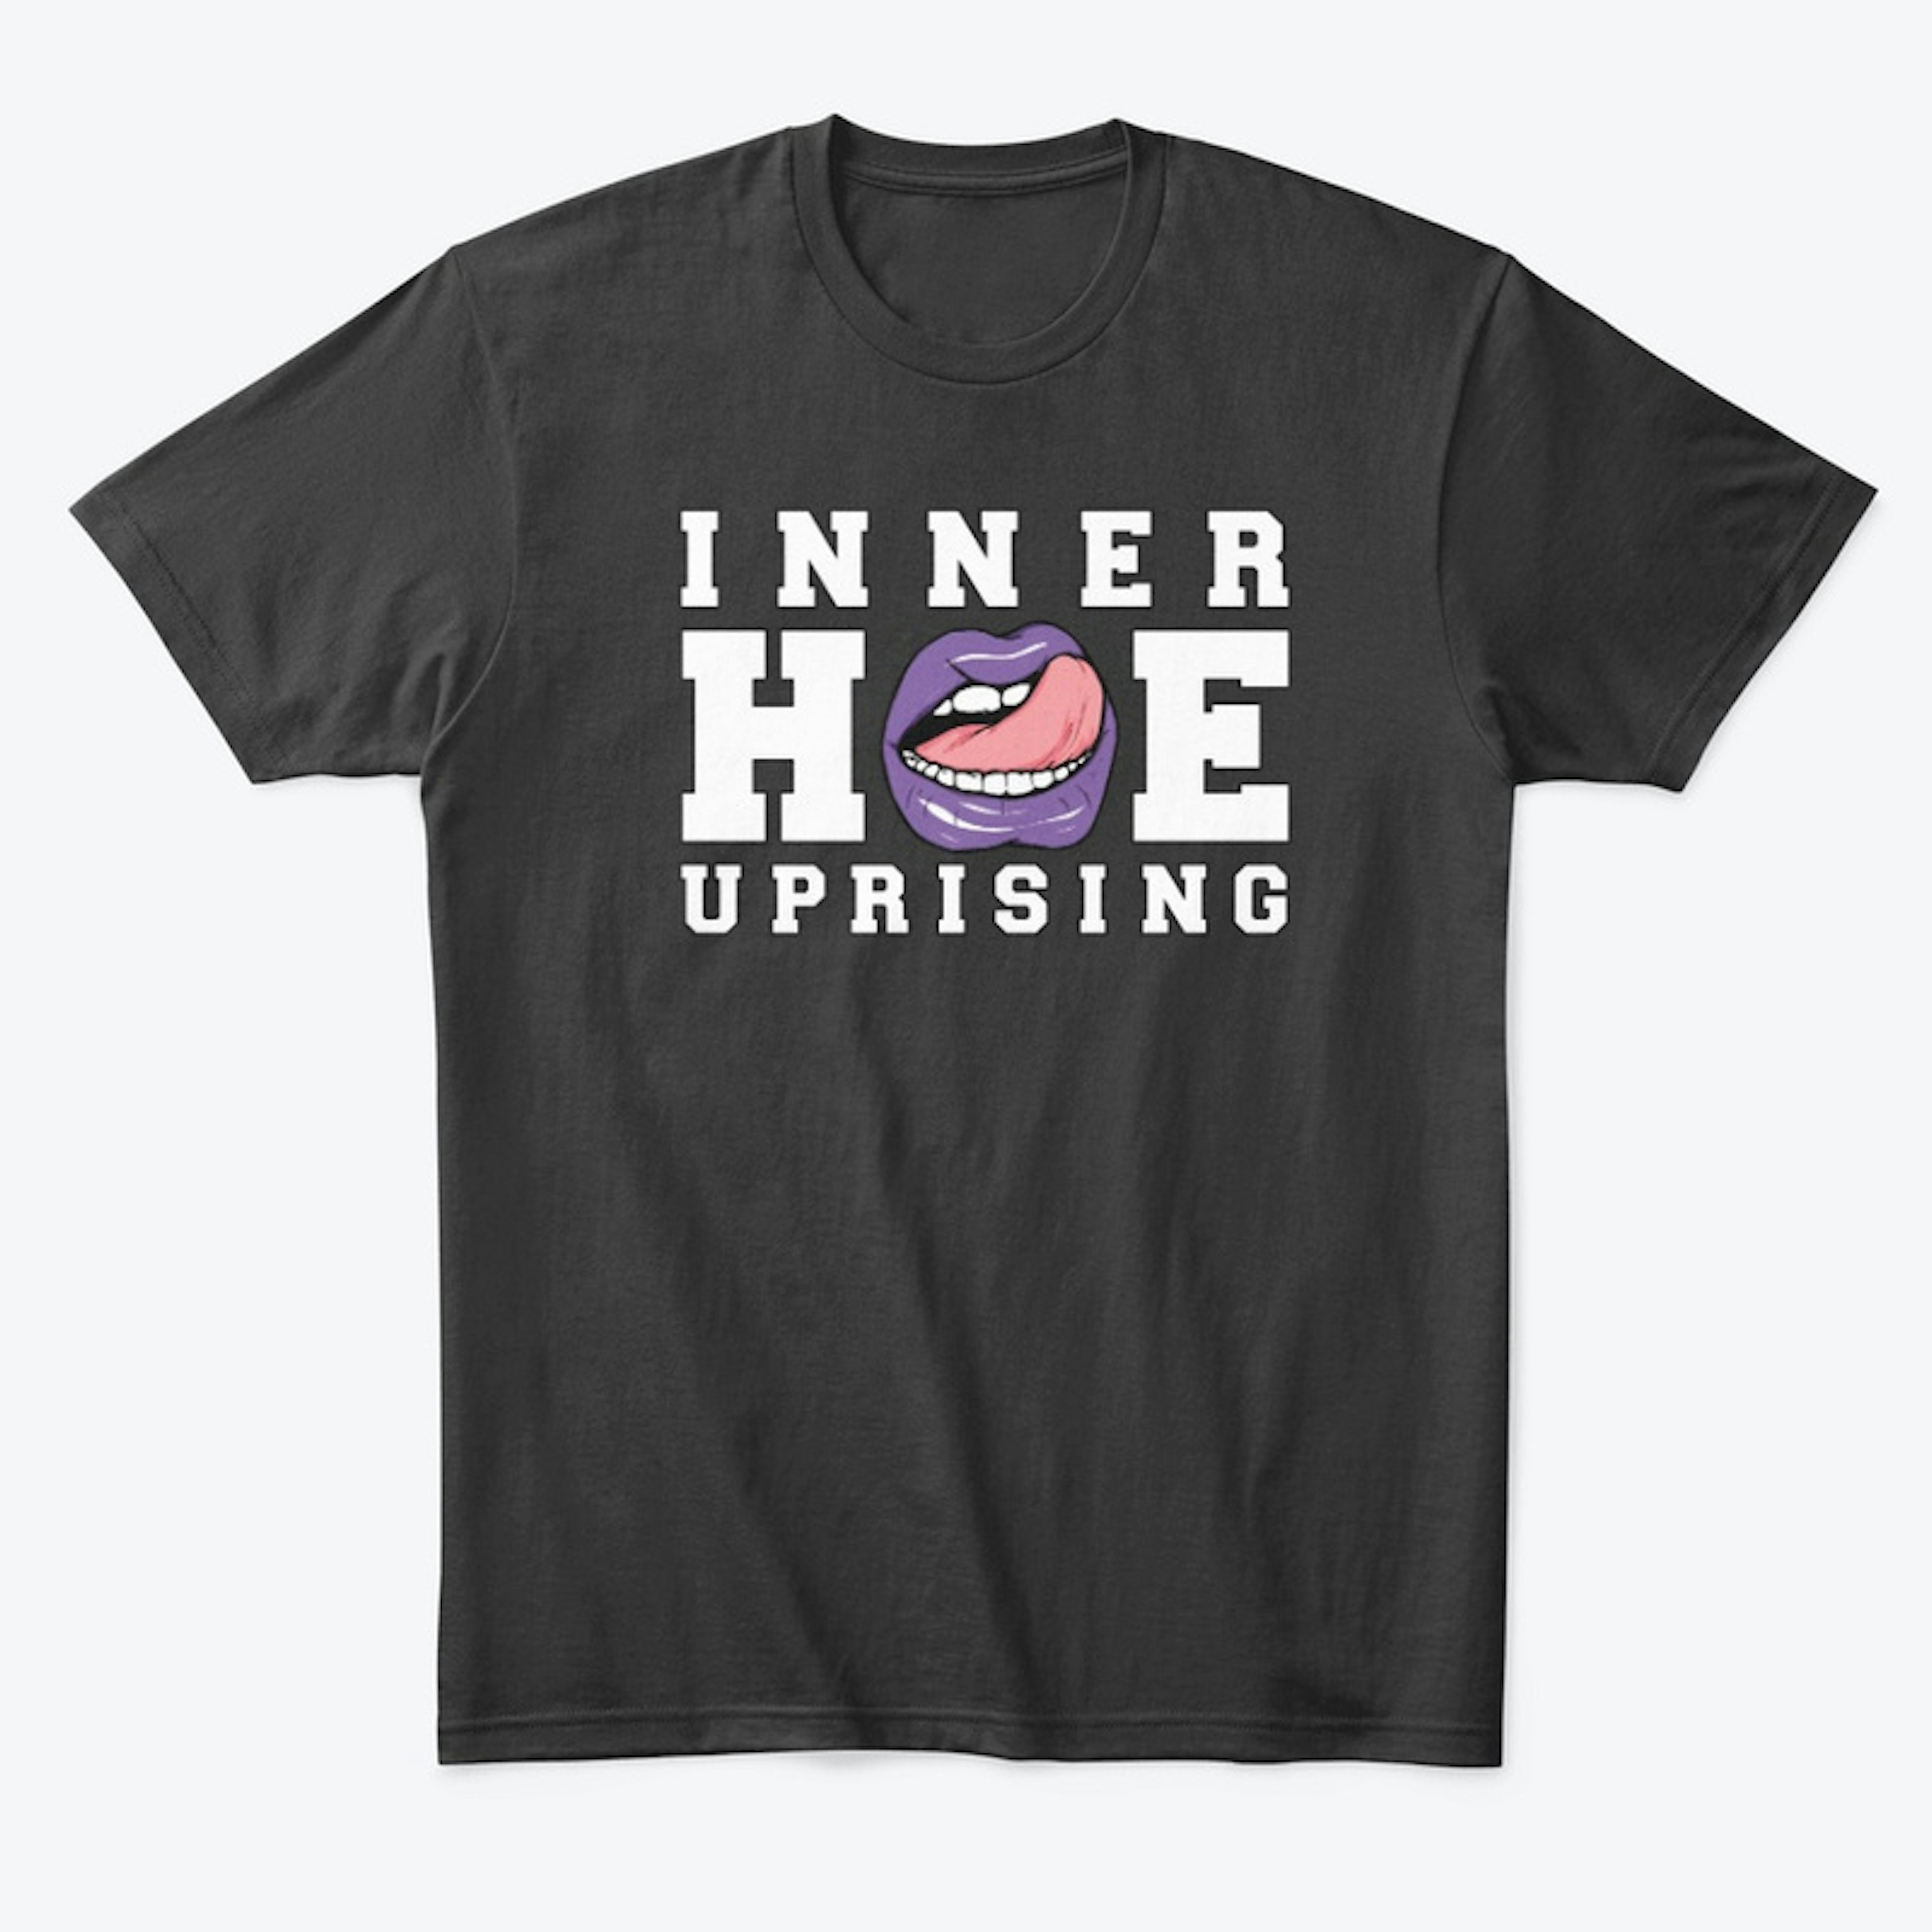 Inner Hoe Uprising